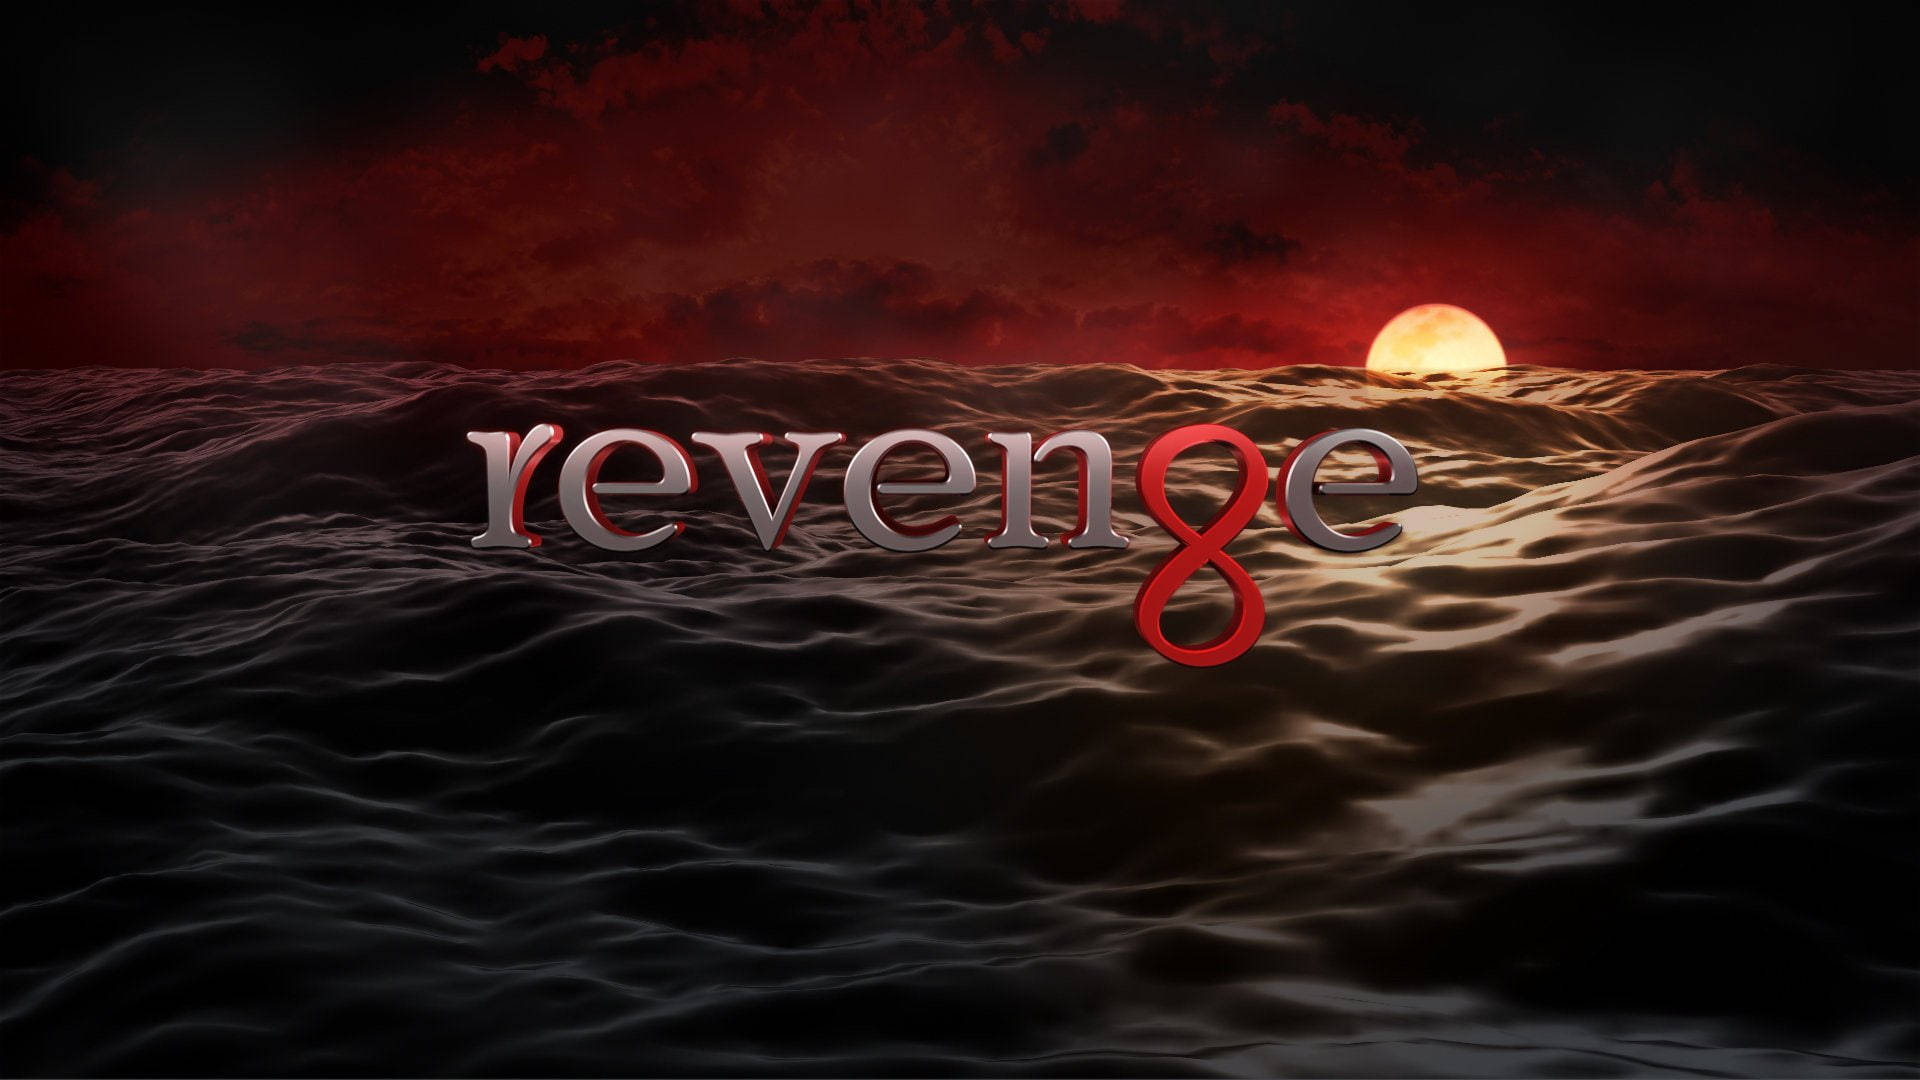 Top 999+ Revenge Wallpaper Full HD, 4K✅Free to Use